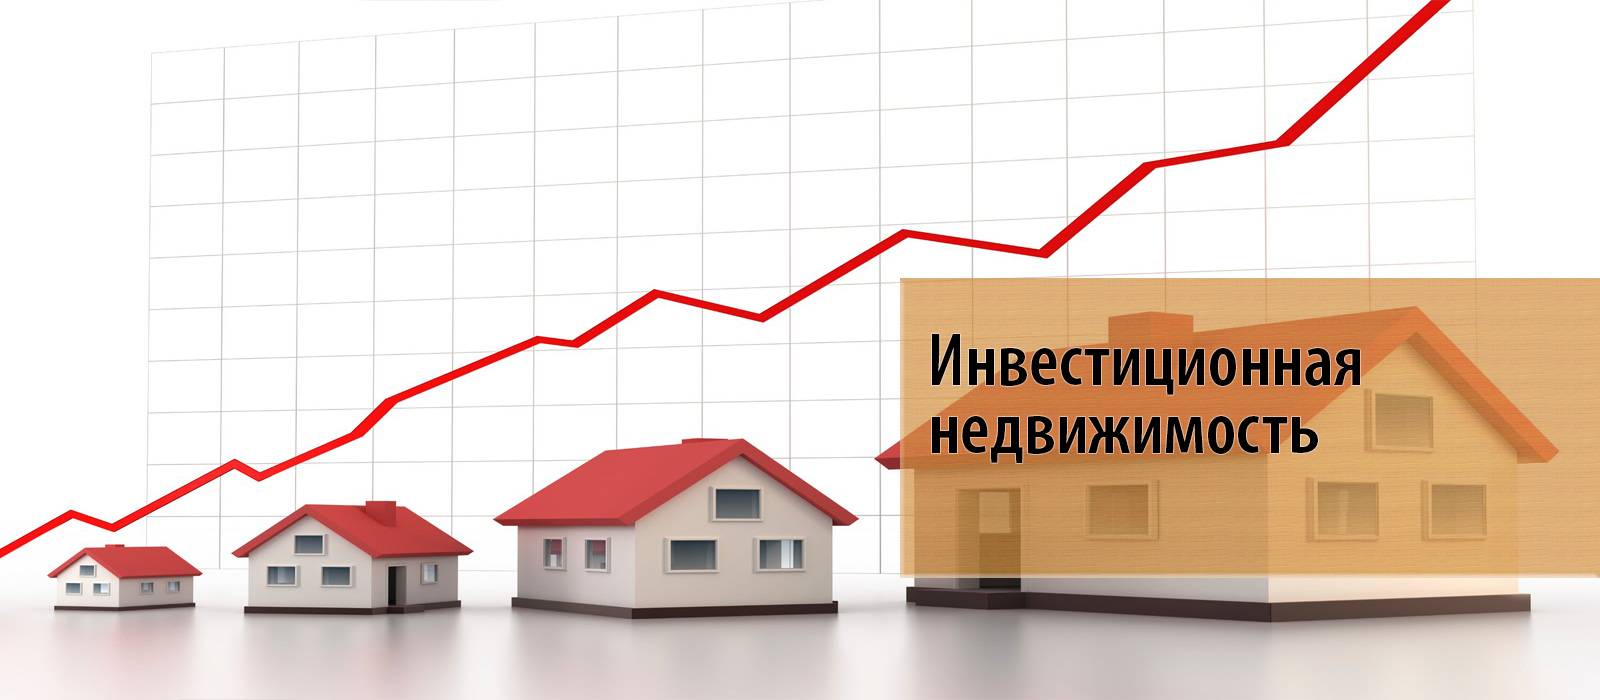 Инвестирование жилую в недвижимость в россии. куда вложить, чтобы не прогадать?